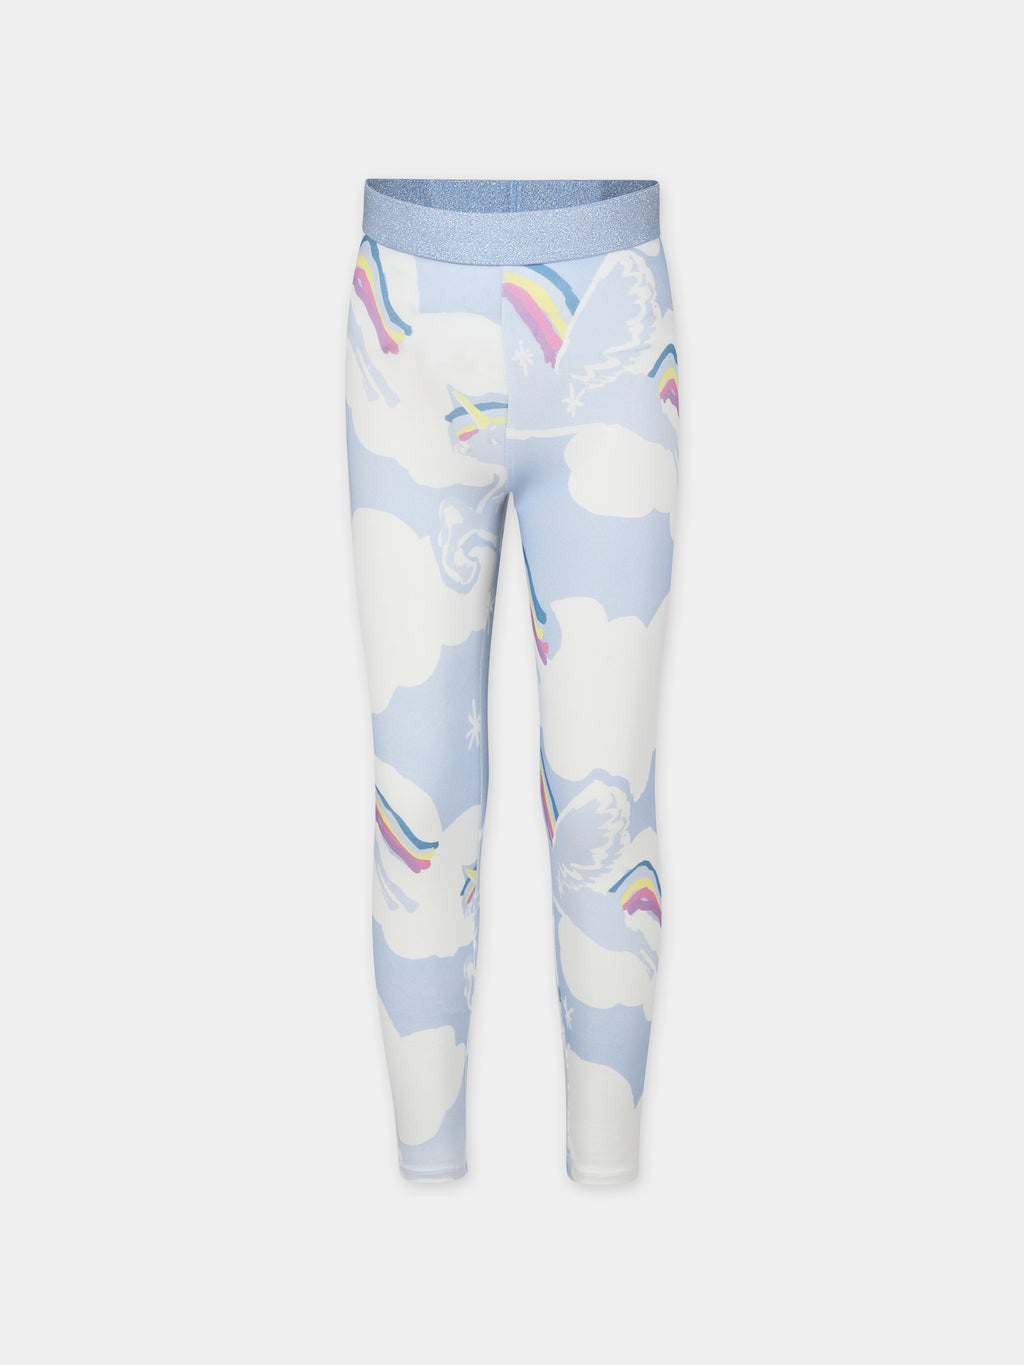 Light blue leggings for girl with unicorn